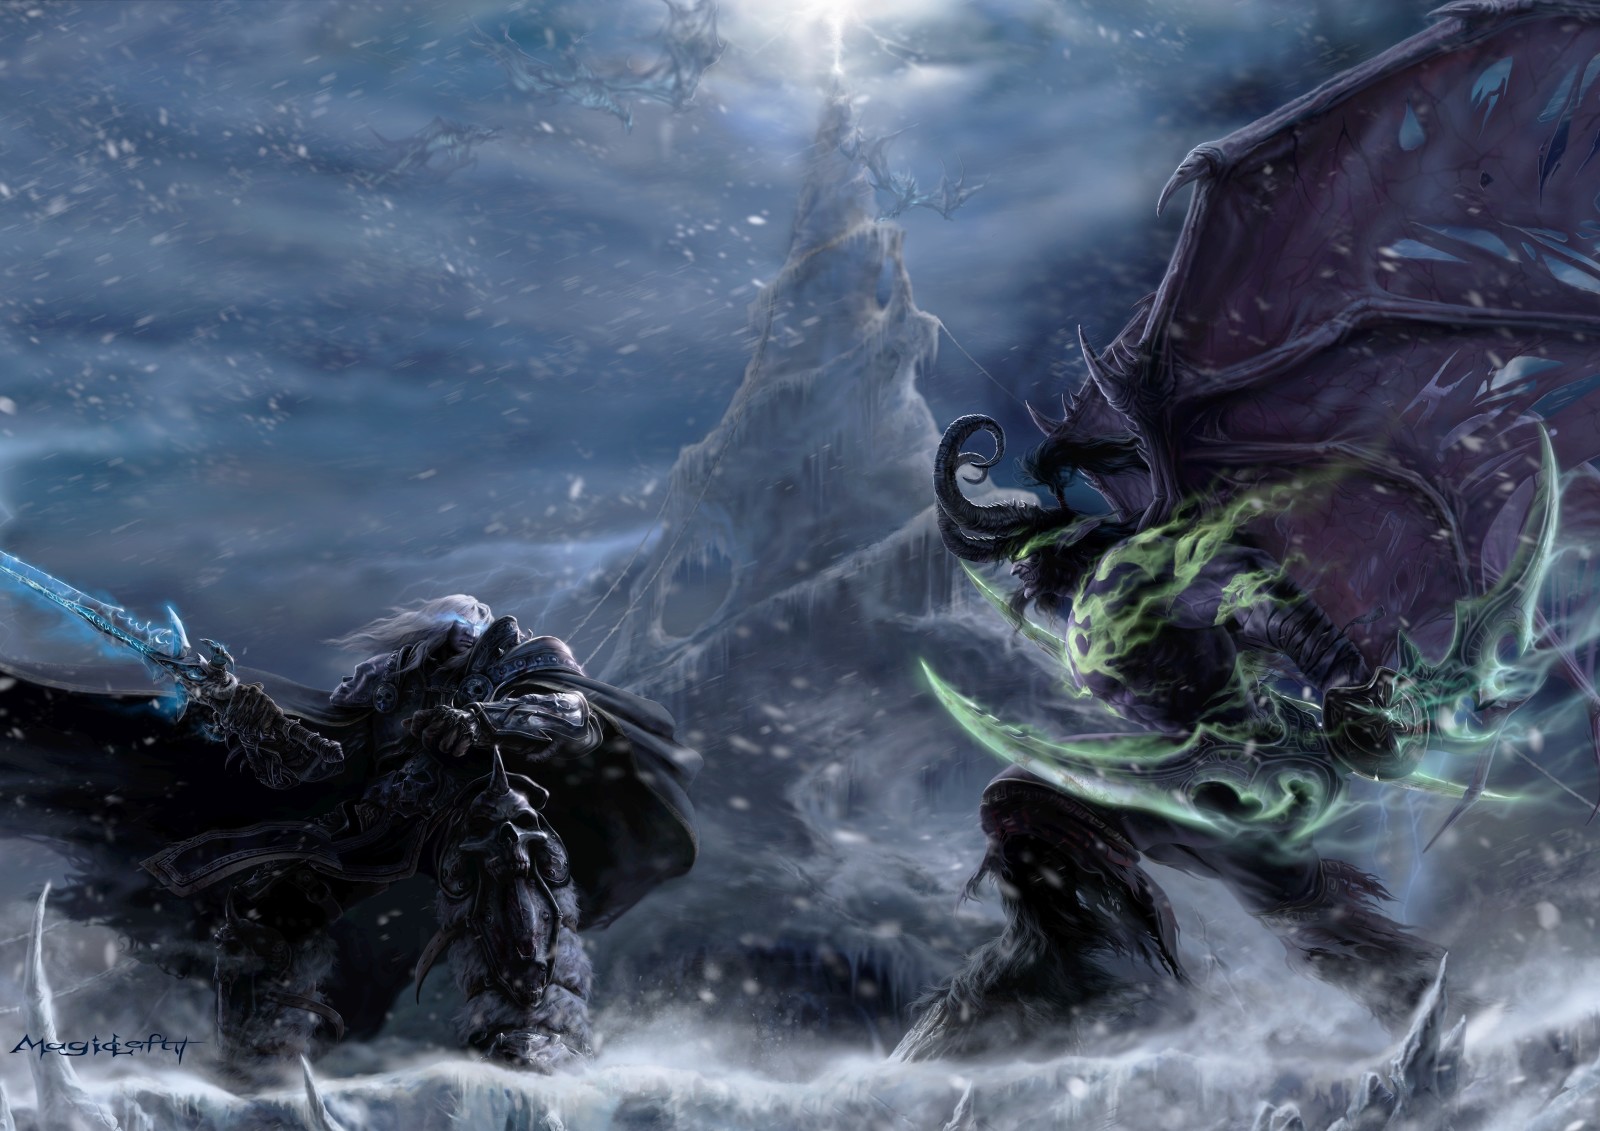 ปิศาจ, เอลฟ์กลางคืน, Warcraft, Arthas, Arthas Menethil, การโจมตีของอิลลิดัน, Illidan